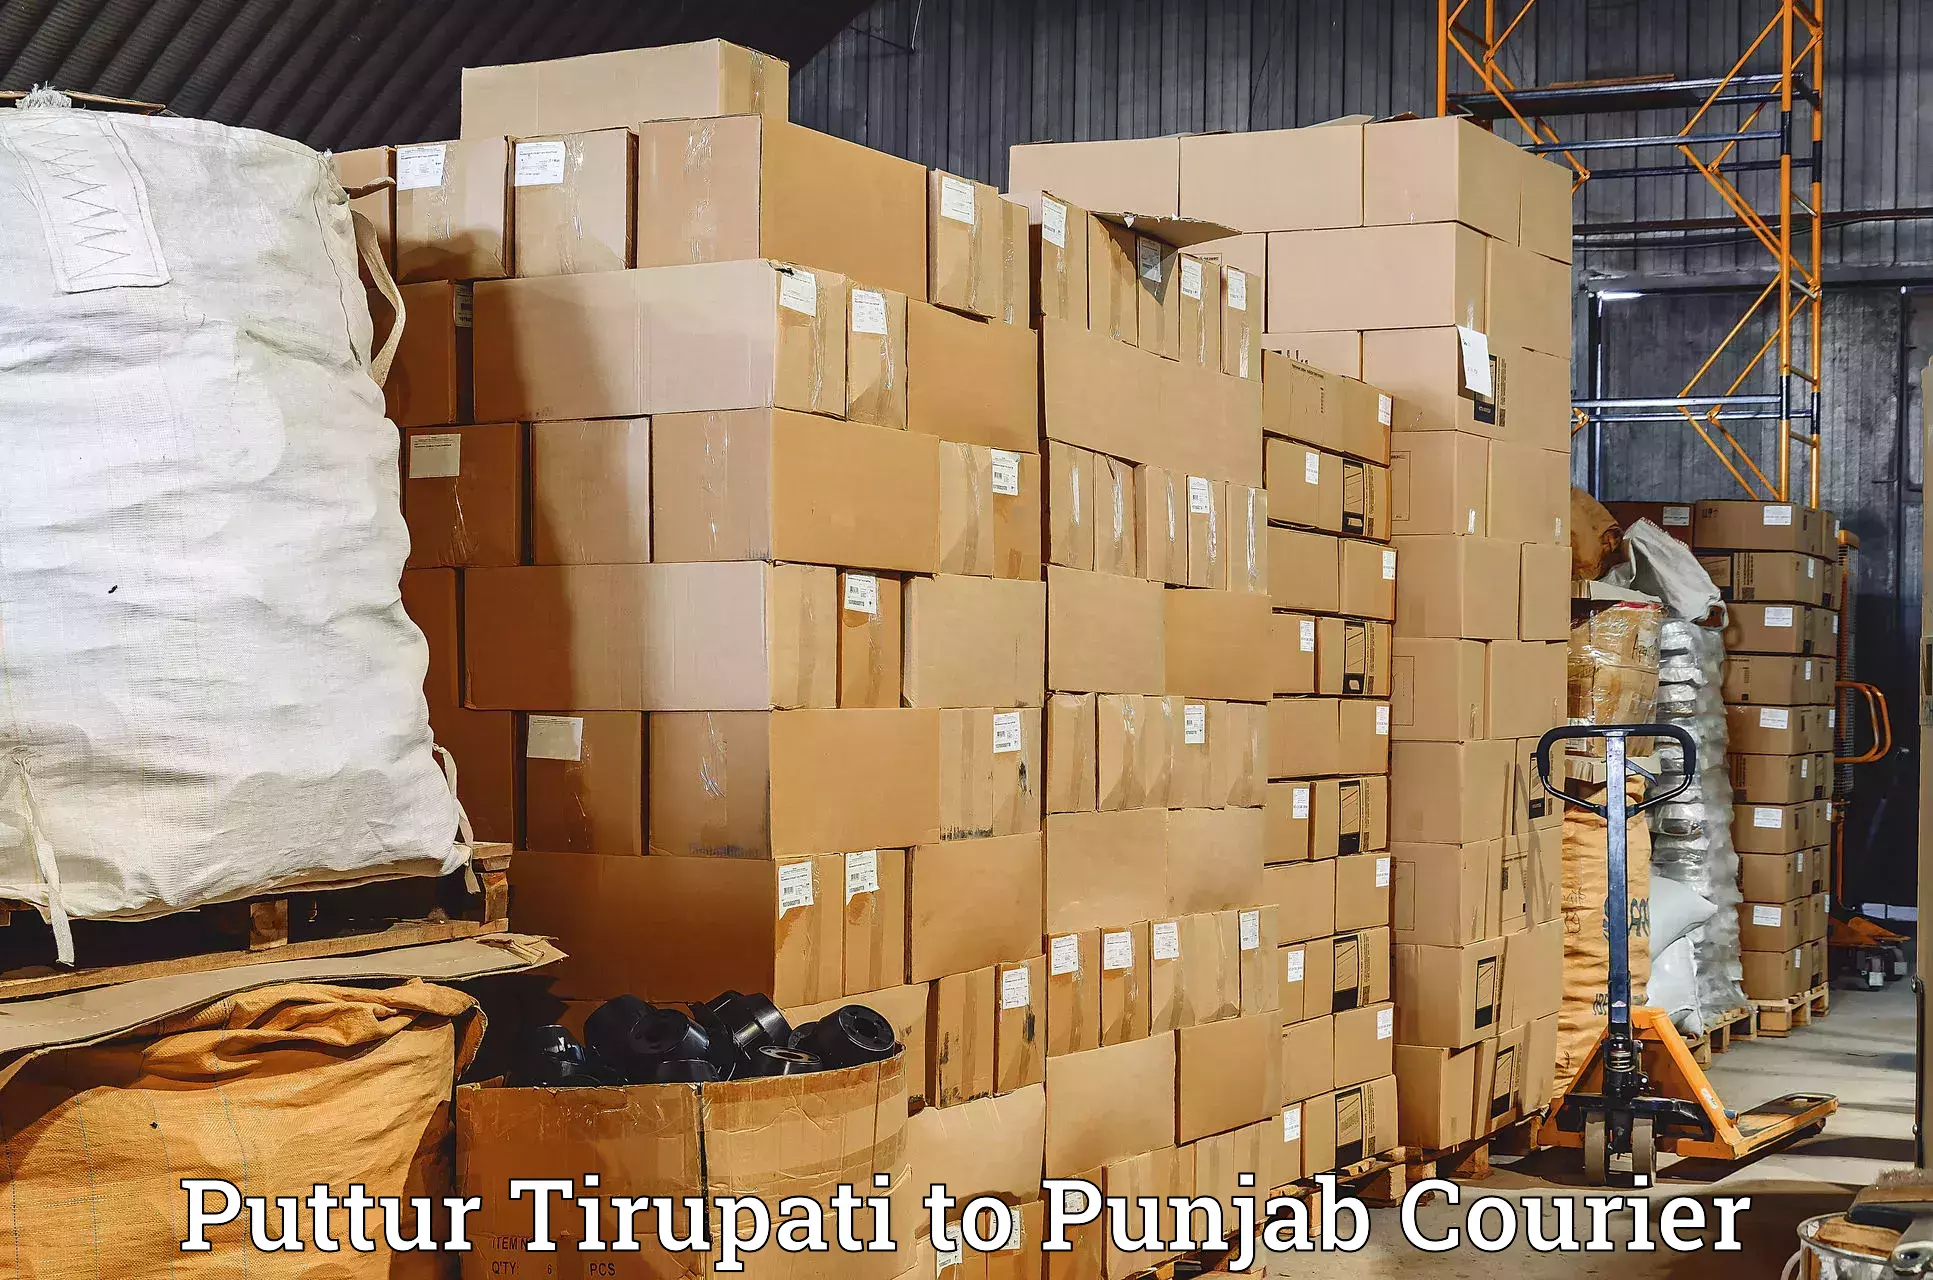 Business delivery service Puttur Tirupati to Dera Bassi